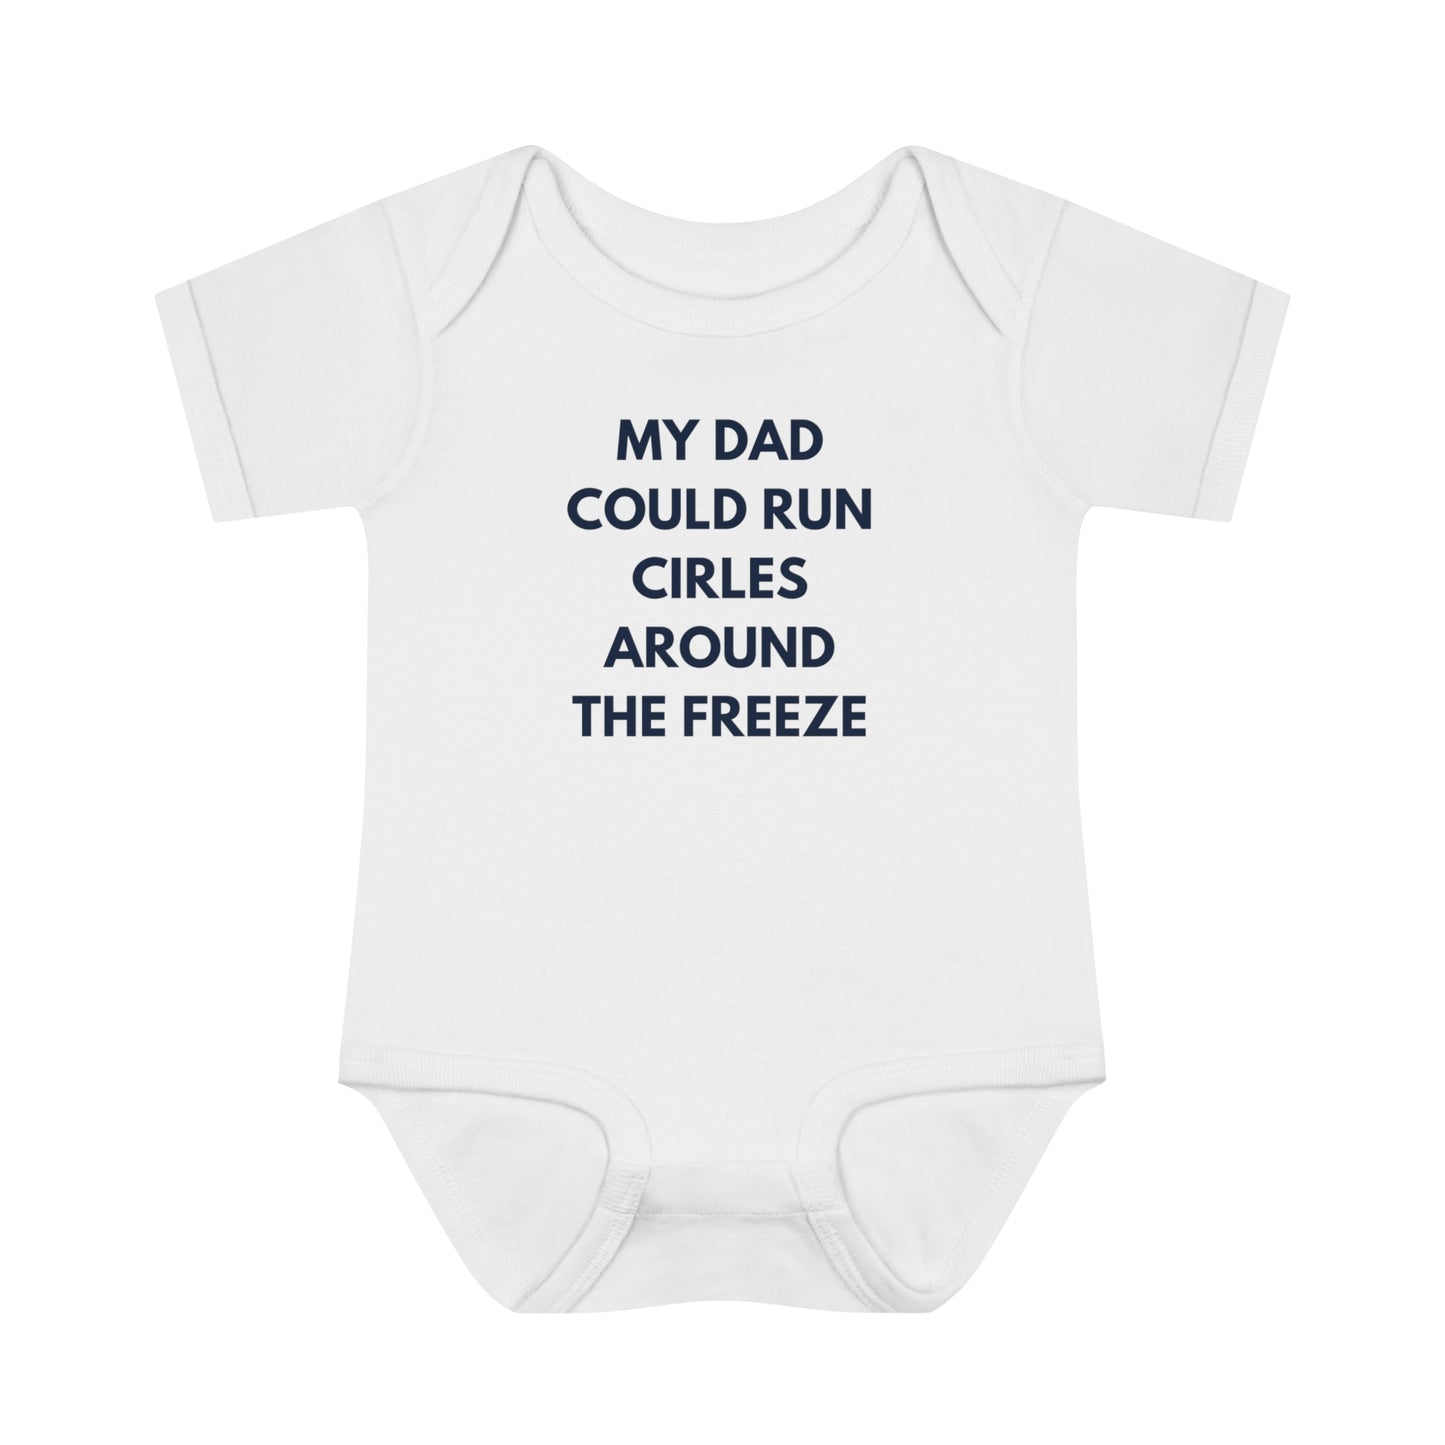 Atlanta Braves "The Freeze" Baby Onesie